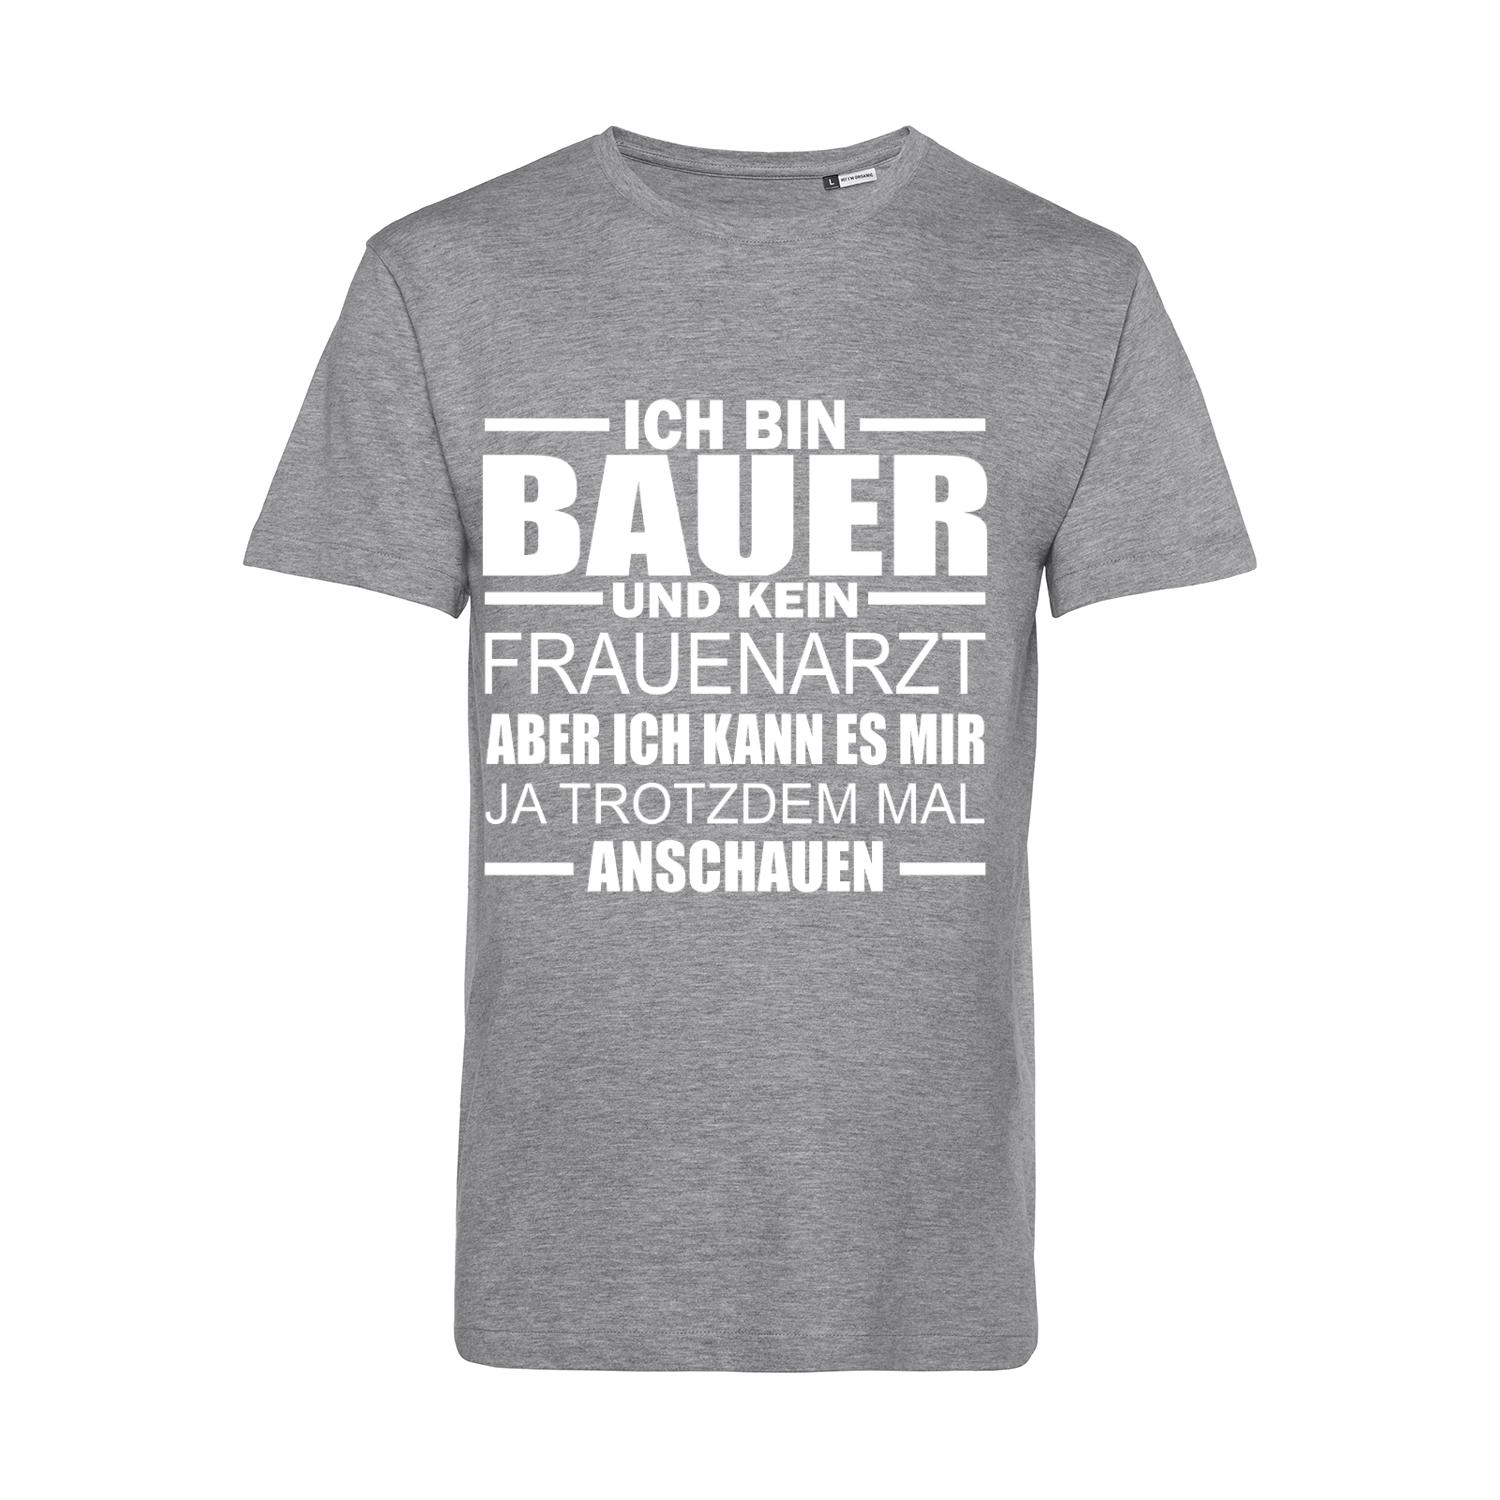 Nachhaltiges T-Shirt Herren Bauer - Kein Frauenarzt